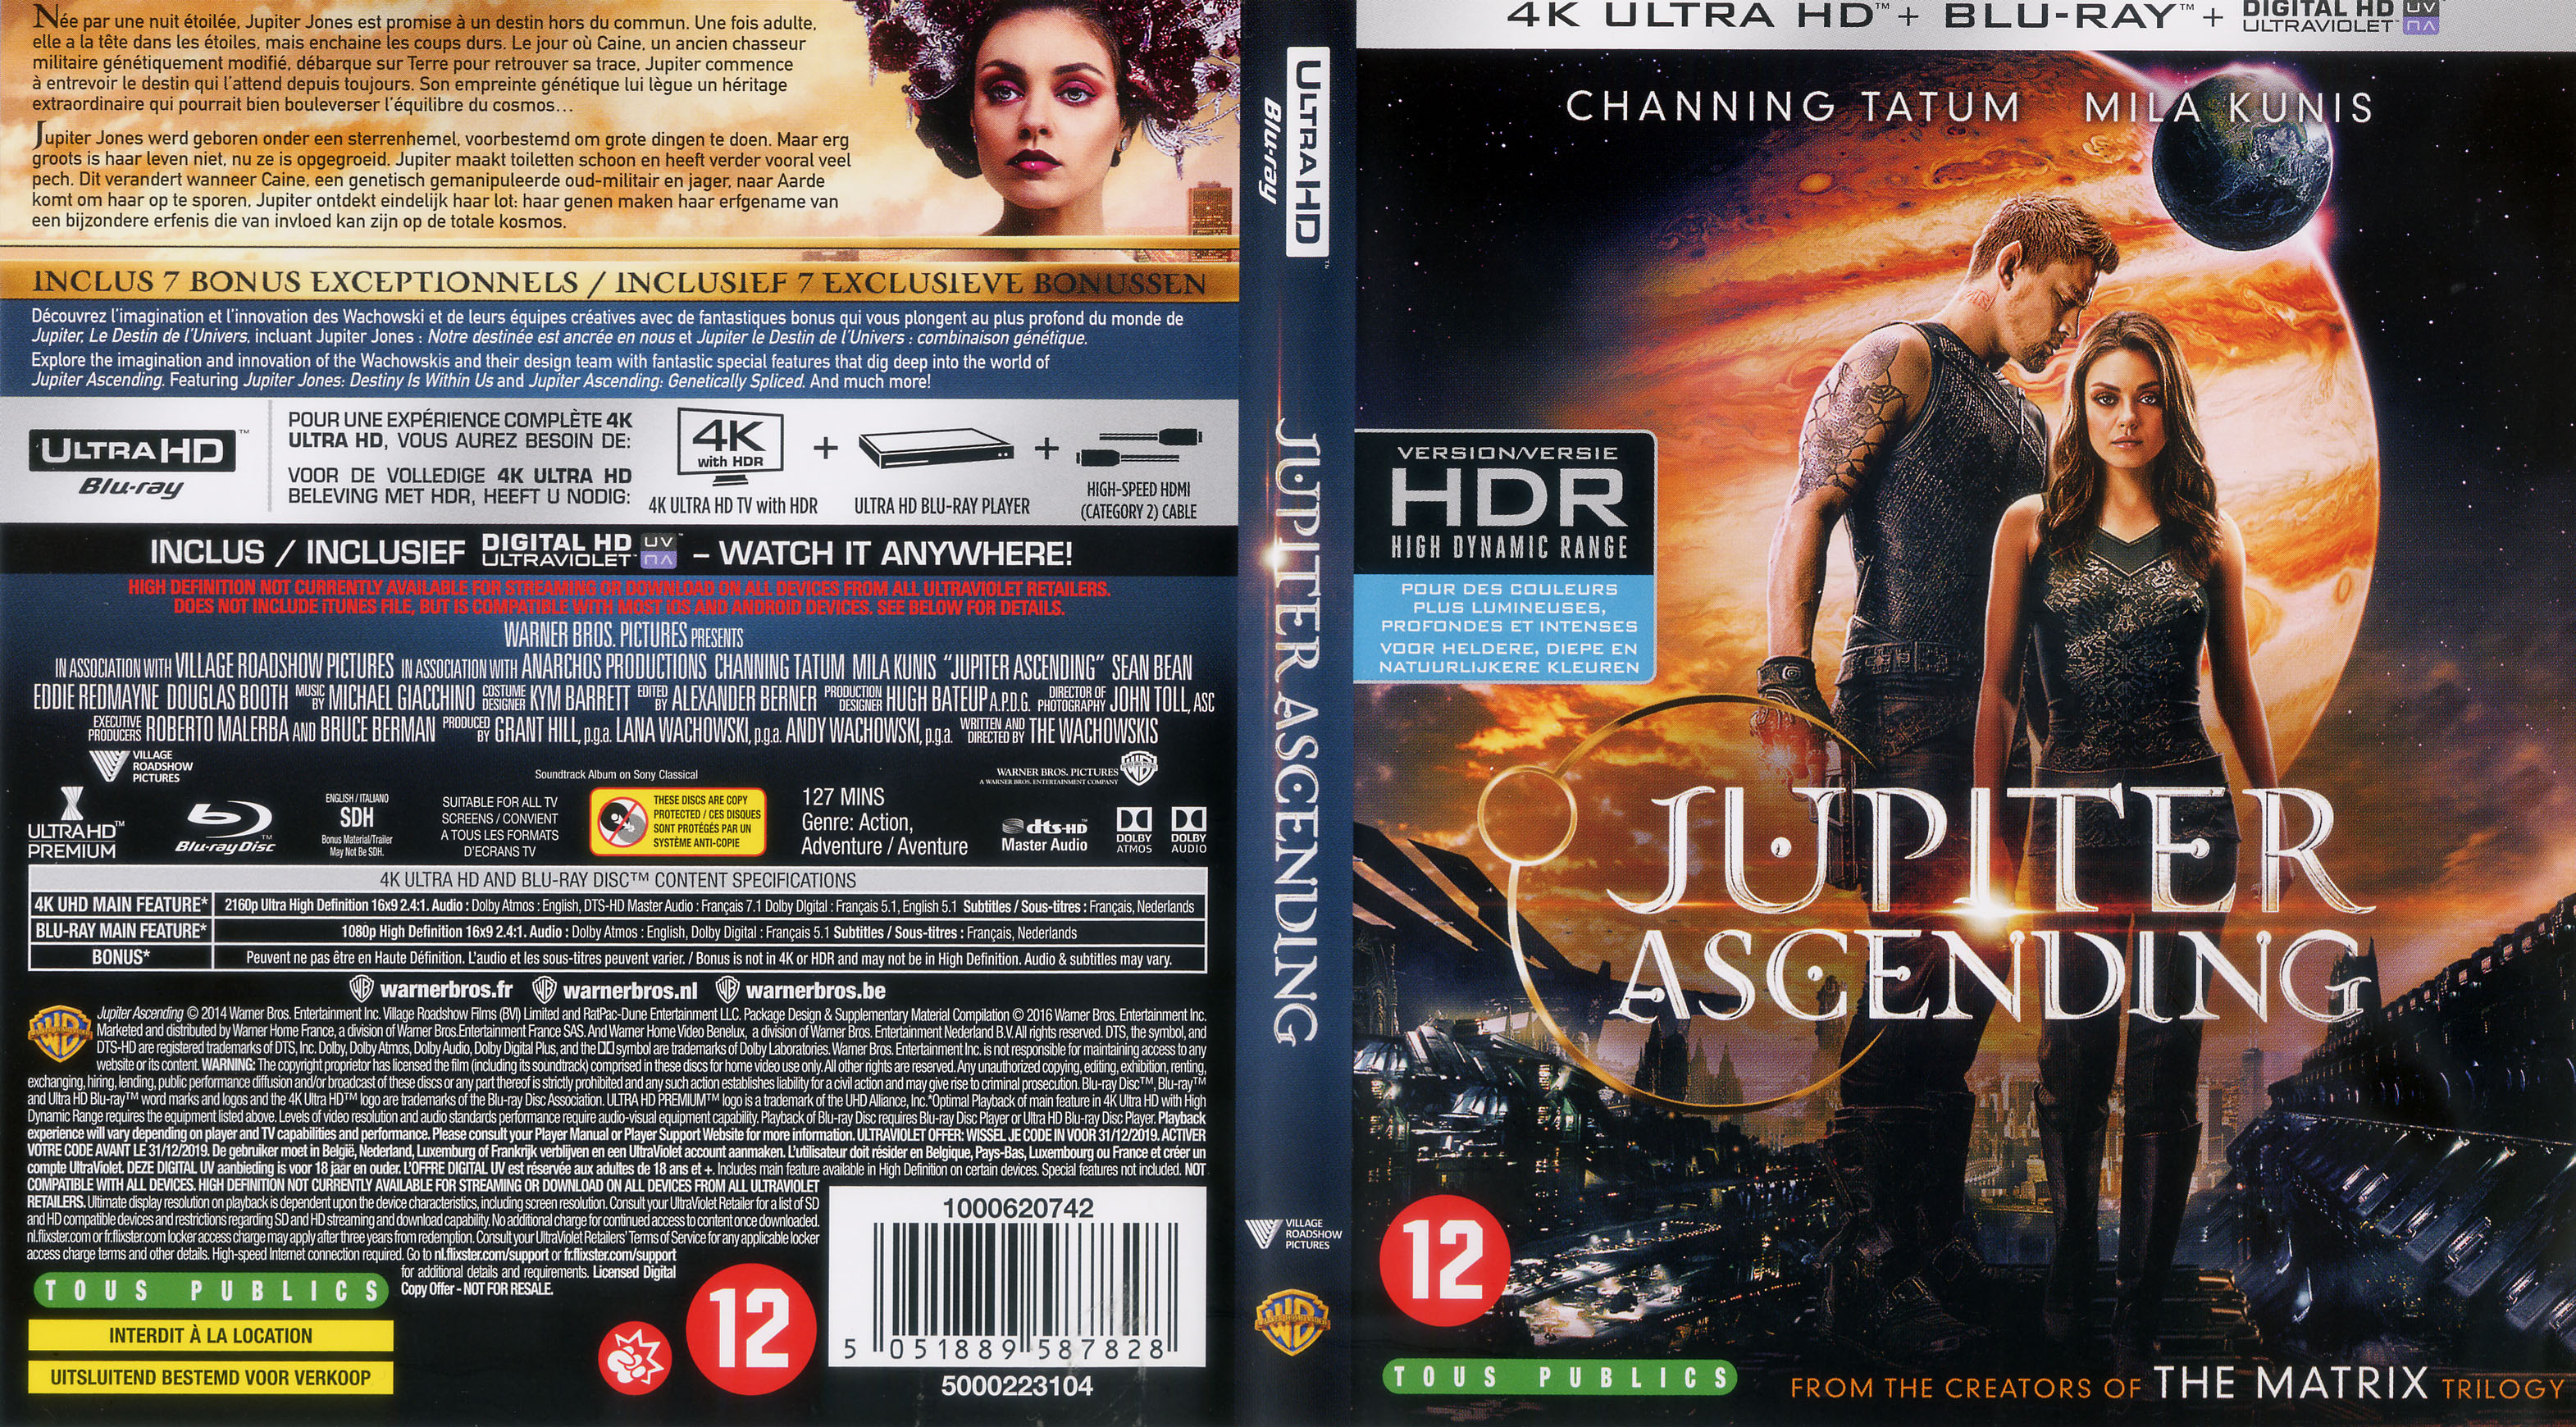 Jaquette DVD Jupiter : Le destin de l